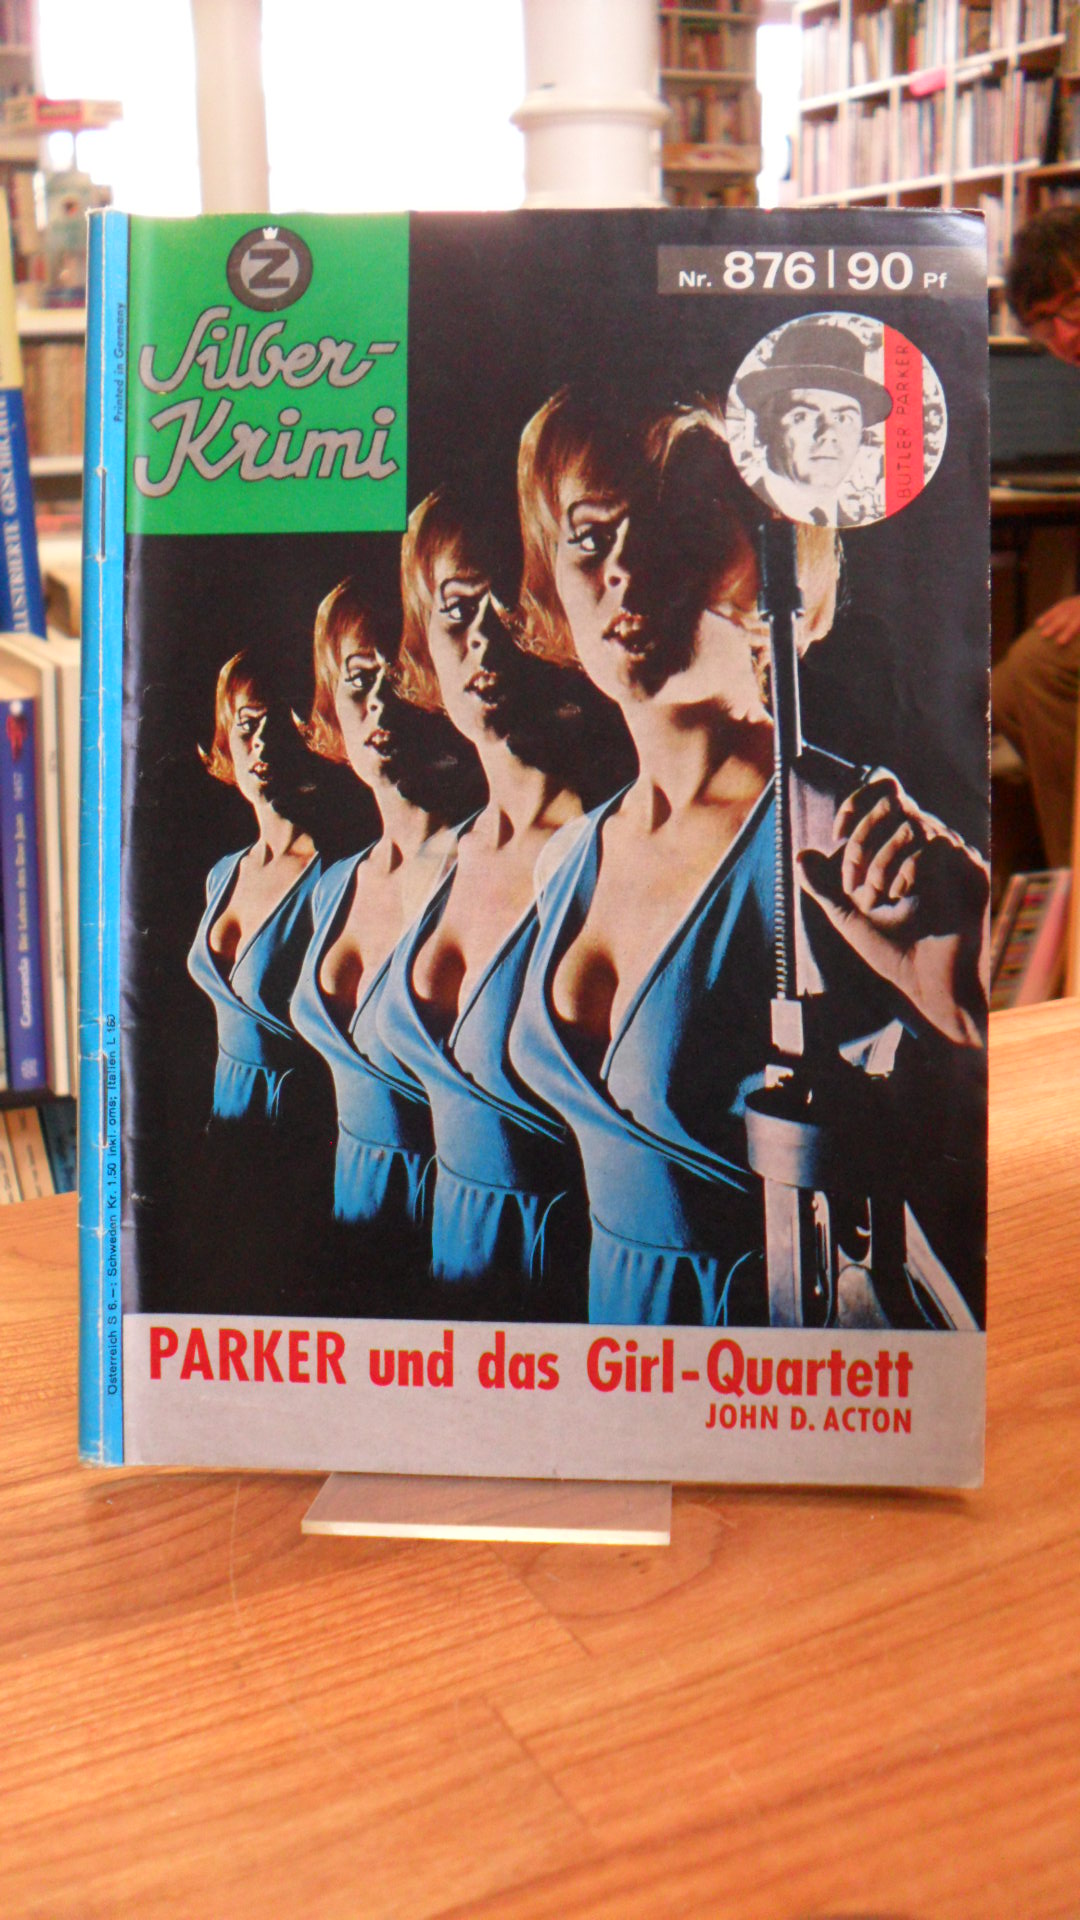 Action, Silber-Krimi Nr. 864 – Parker und das Girl-Quartett,